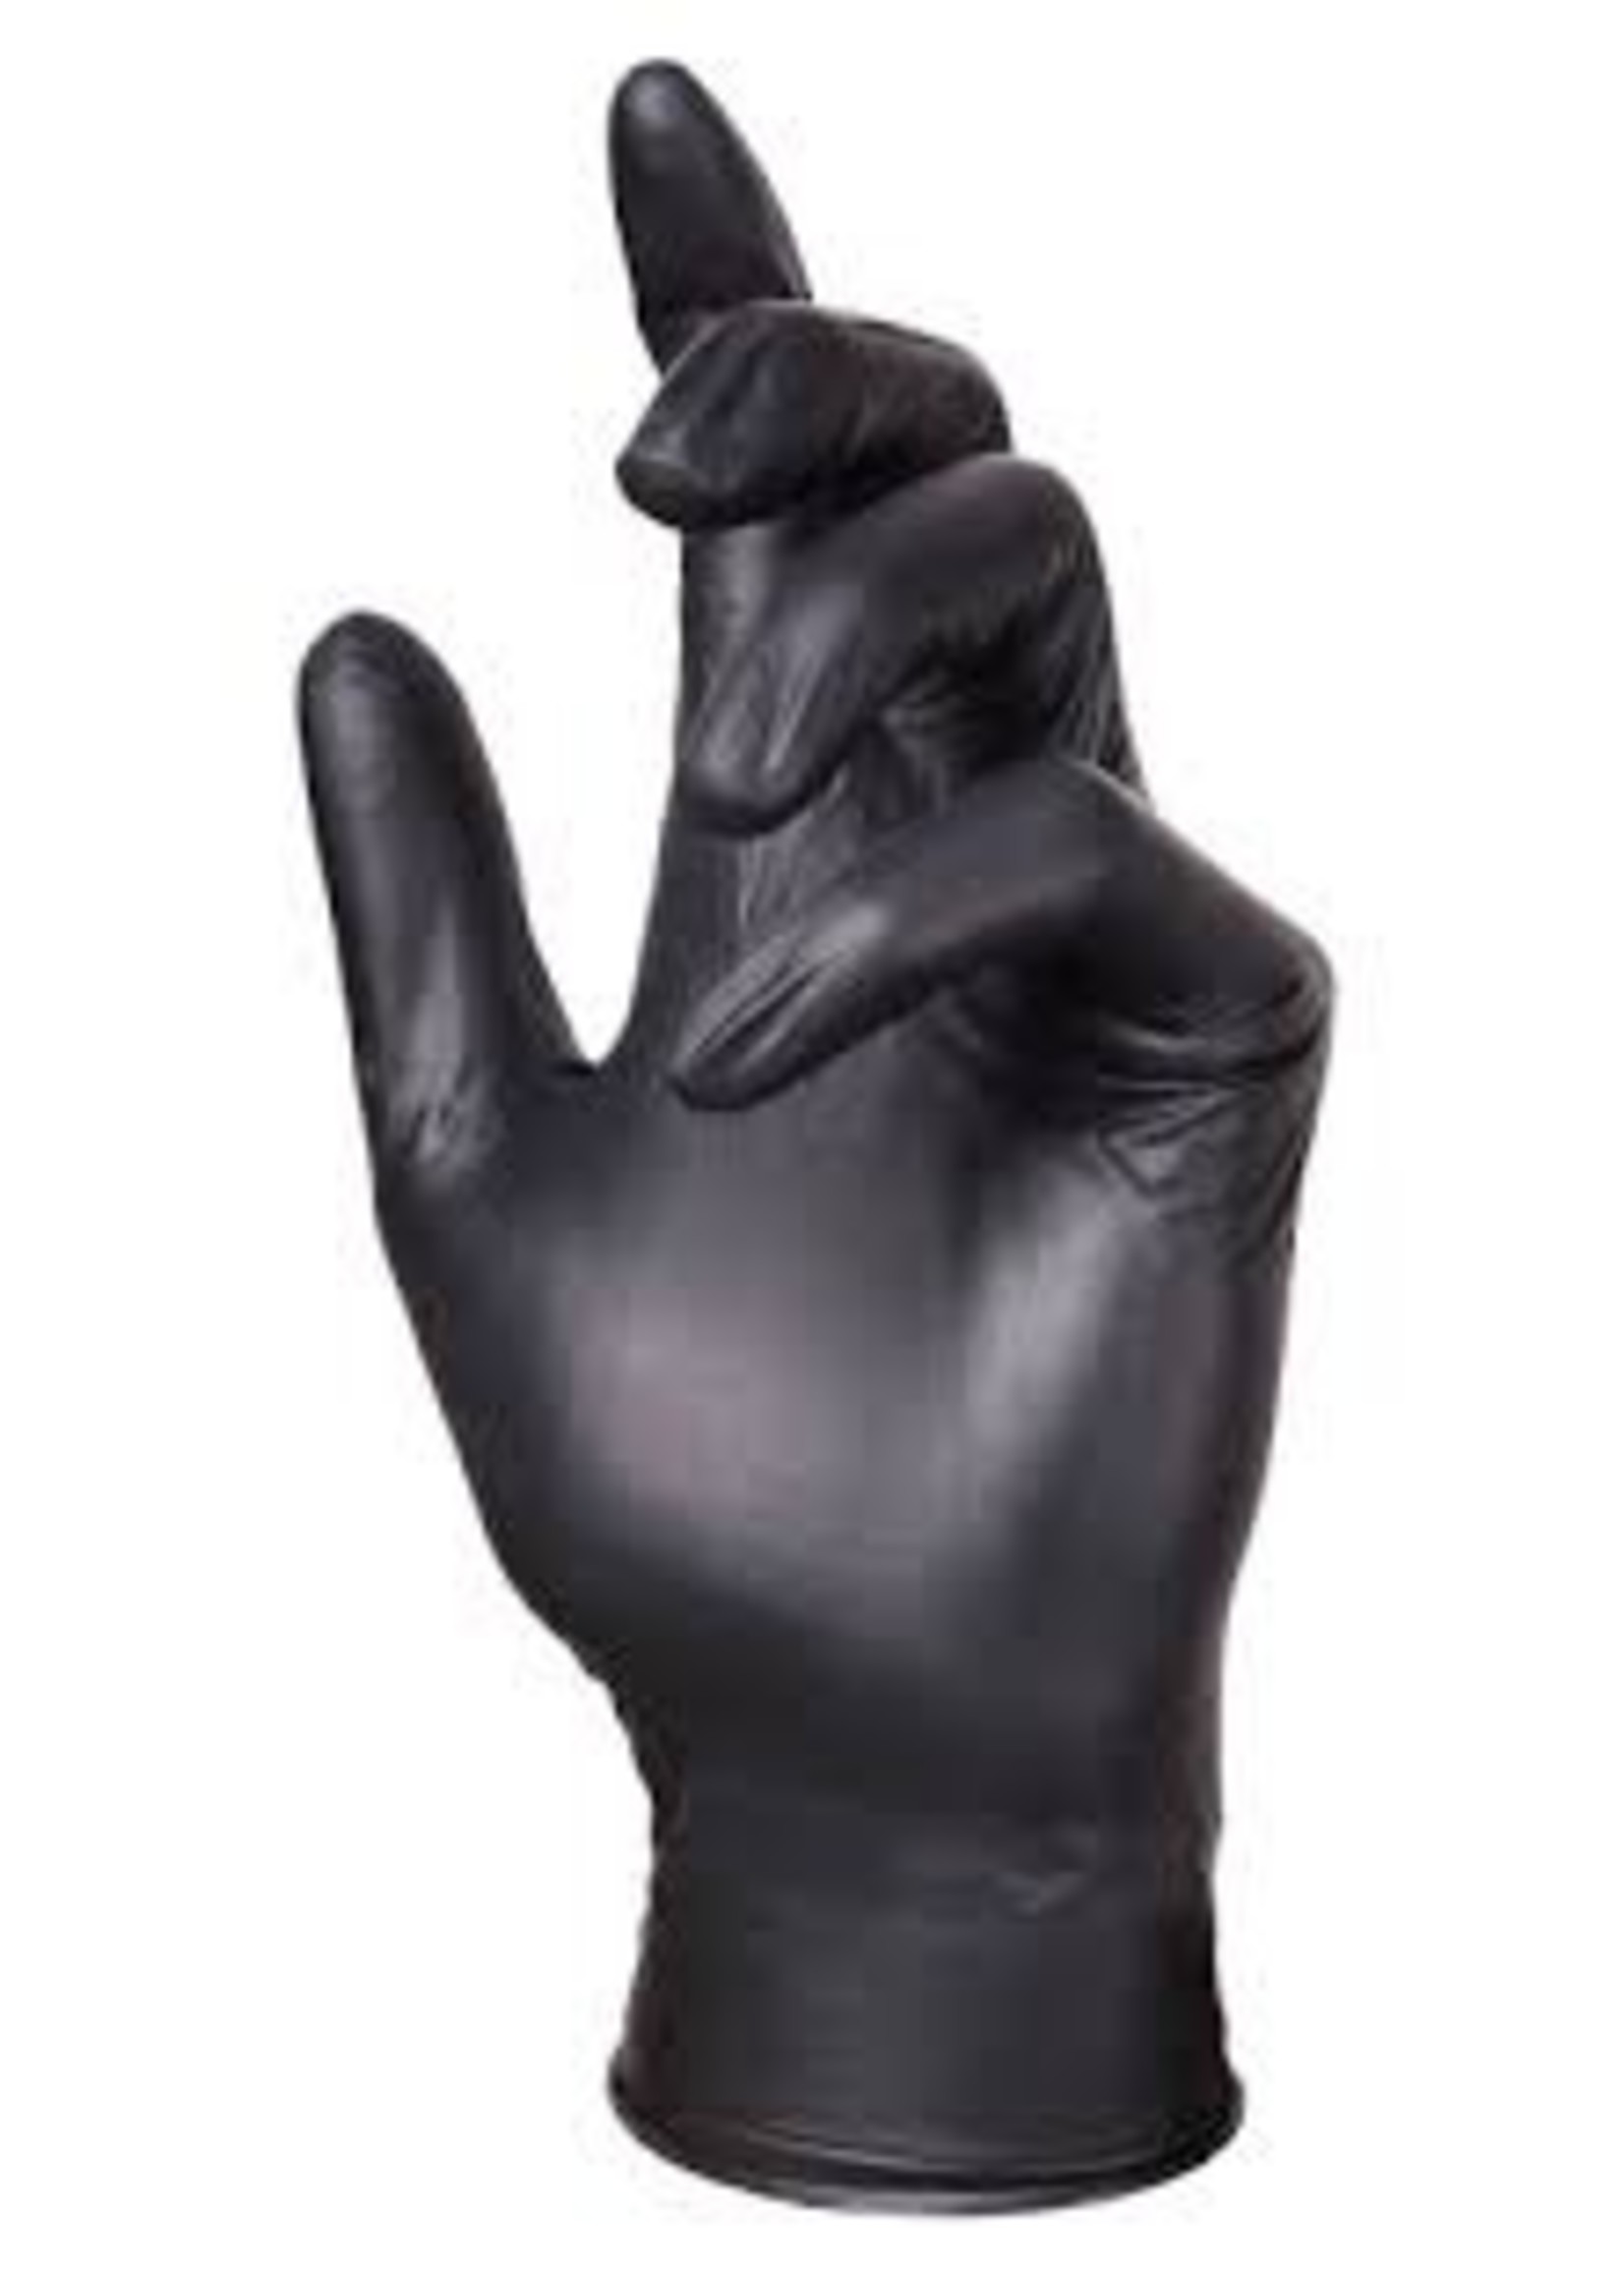 Le meilleur gant nitrile noir - EBONY - Tailles XS-S-M-L-XL - WWW